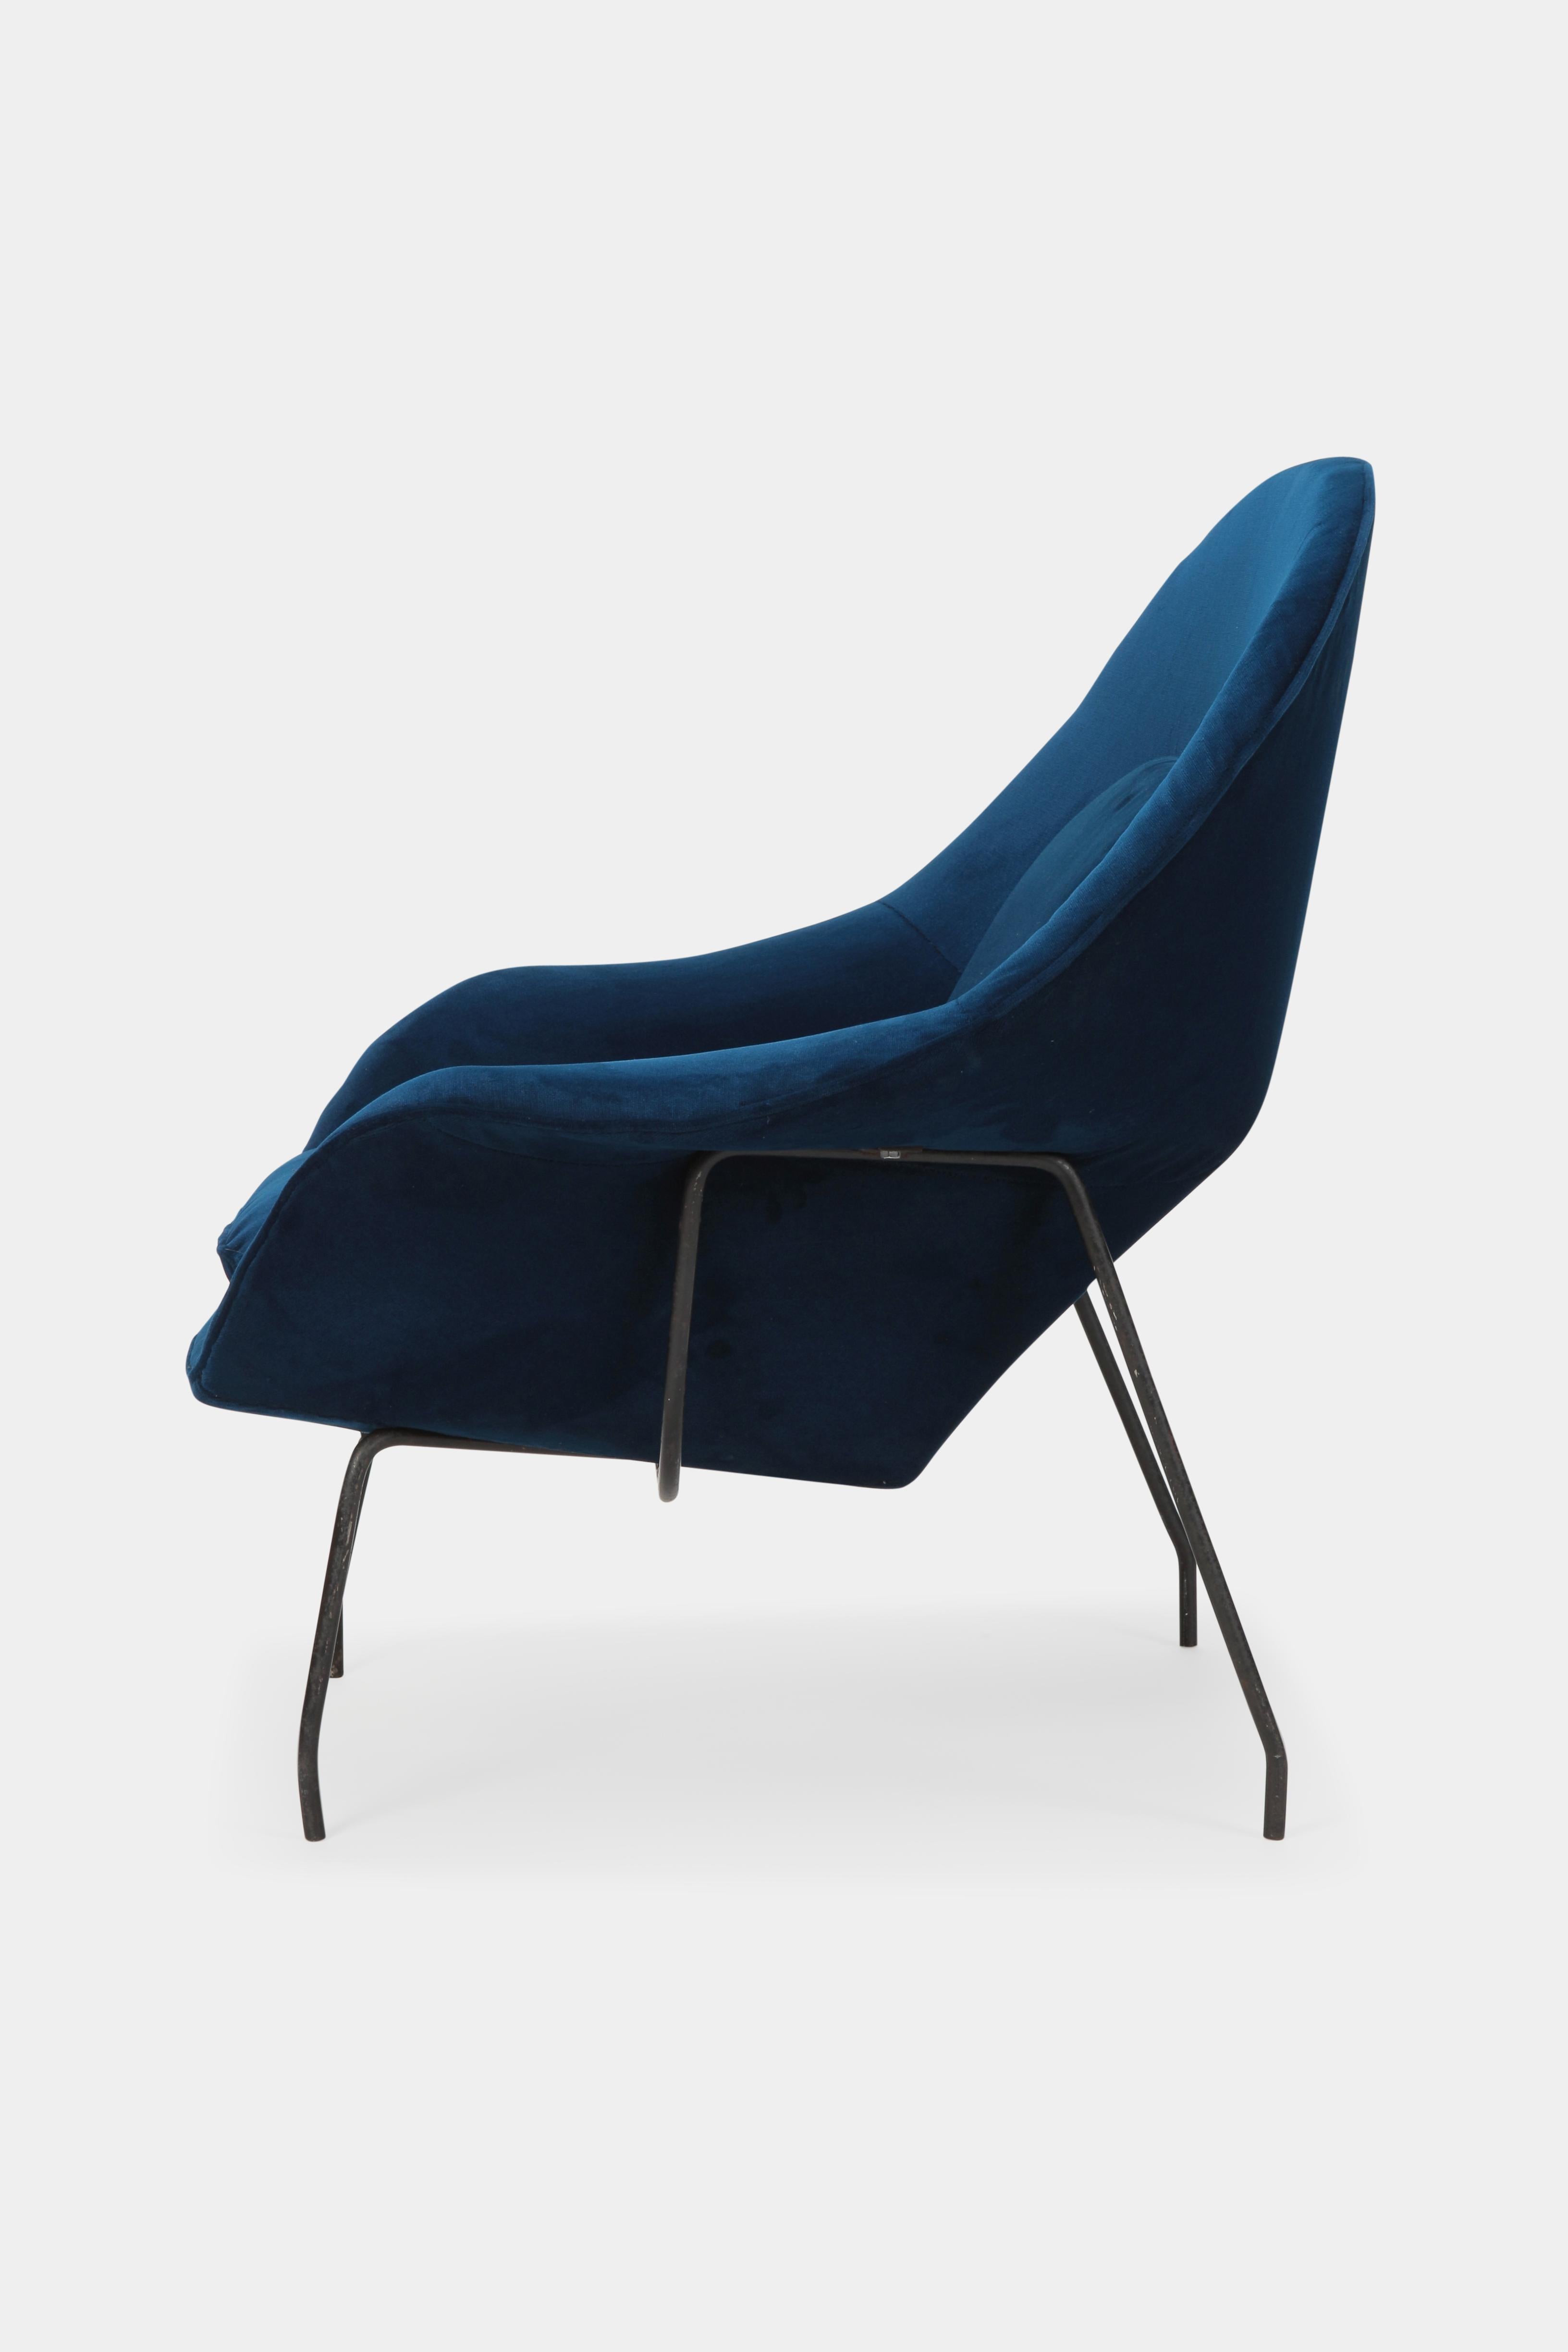 Danish Eero Saarinen Womb Chair Knoll Int. 1950s